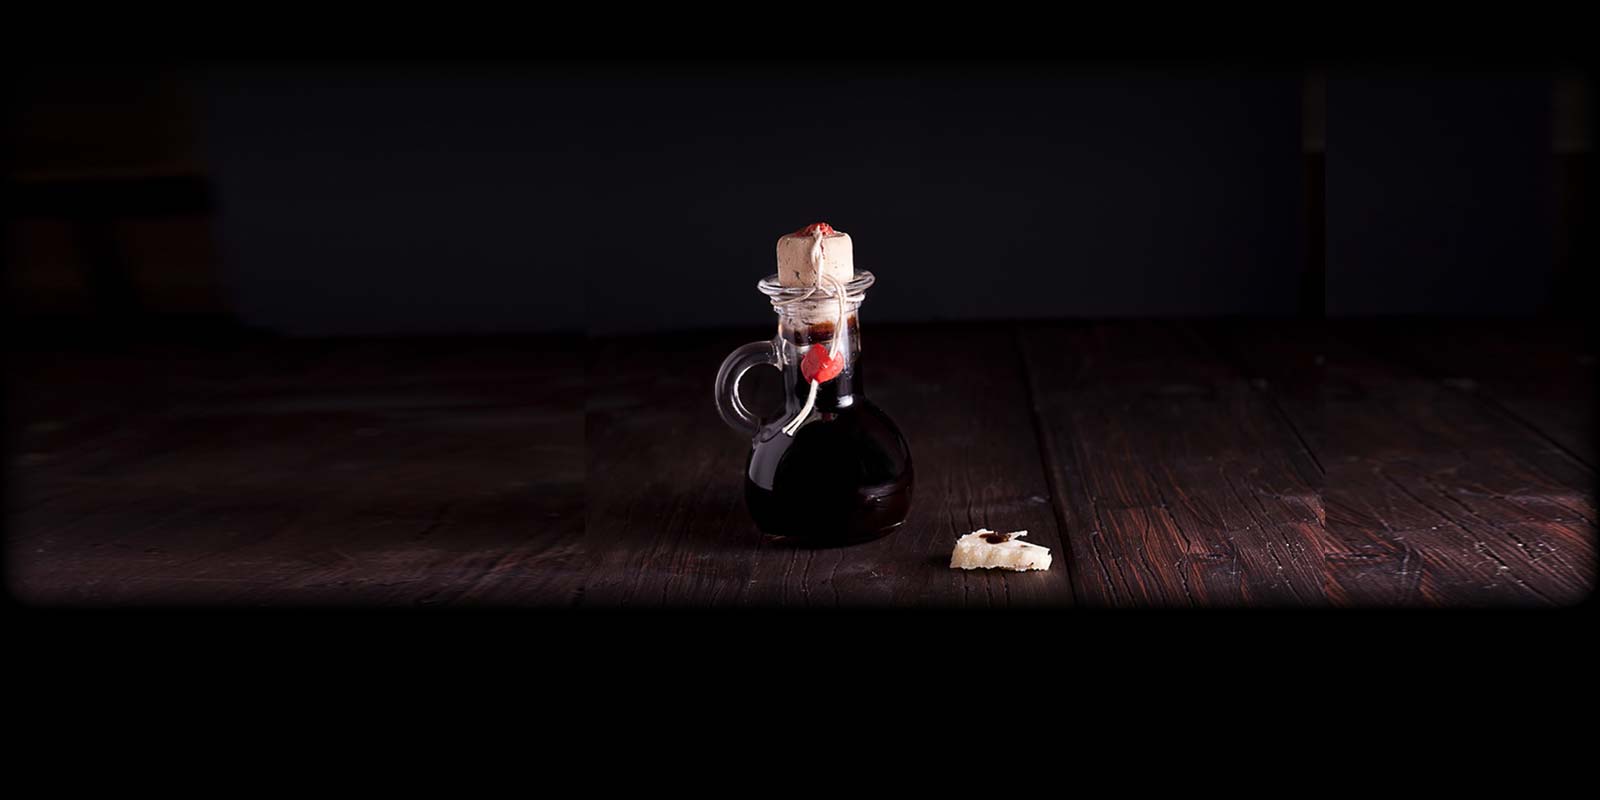 Aceto Balsamico Tradicional Este vinagre es un producto puramente natural, libre de conservantes y colorantes. Solo se producen unos 10.000 litros al ano, lo que lo convierte en uno de los vinagres mas raros y valiosos del mundo.